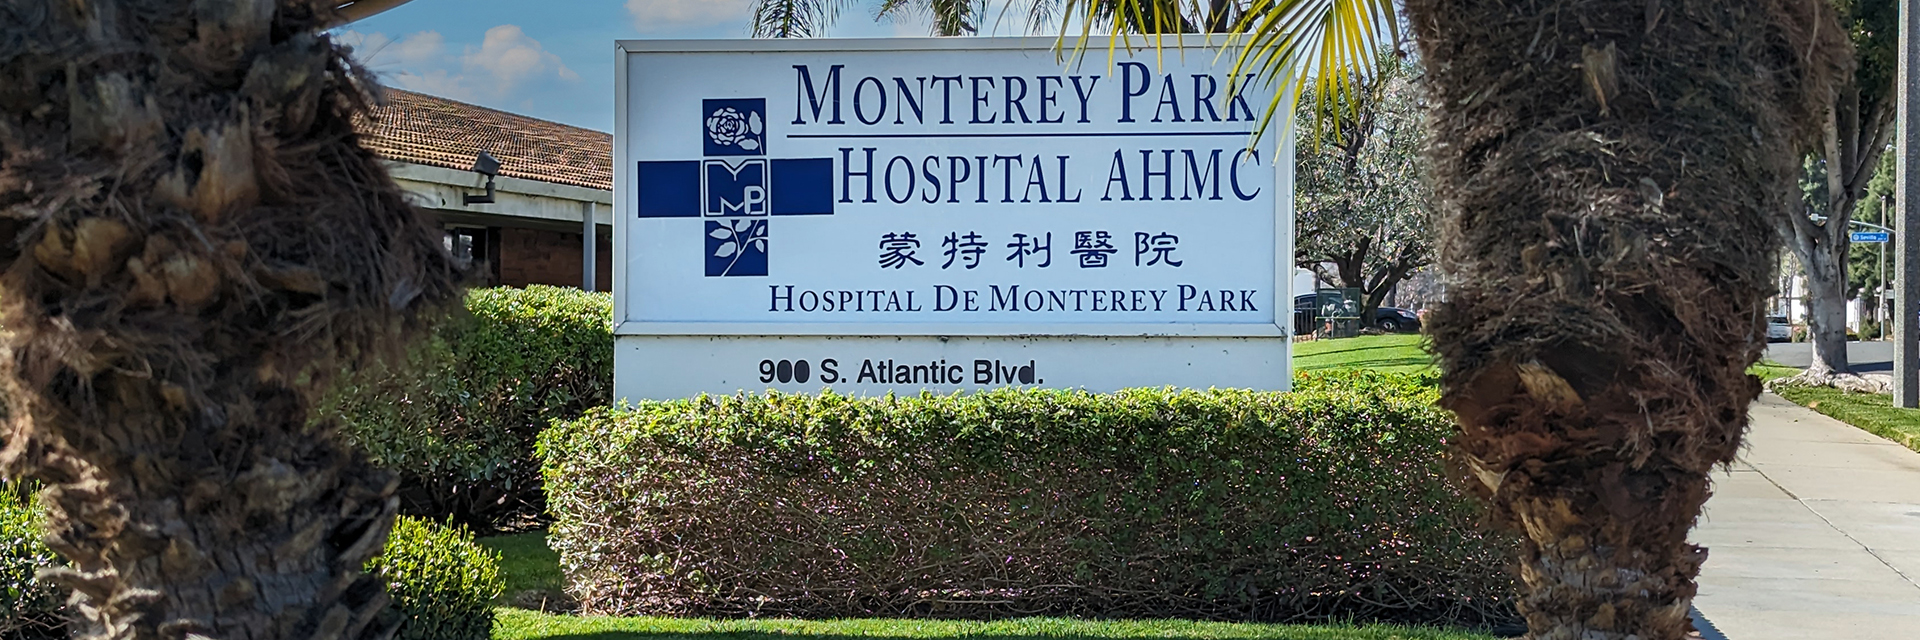 Montery Hospital AHMC
HOSPITAL DE MONTERY PARK